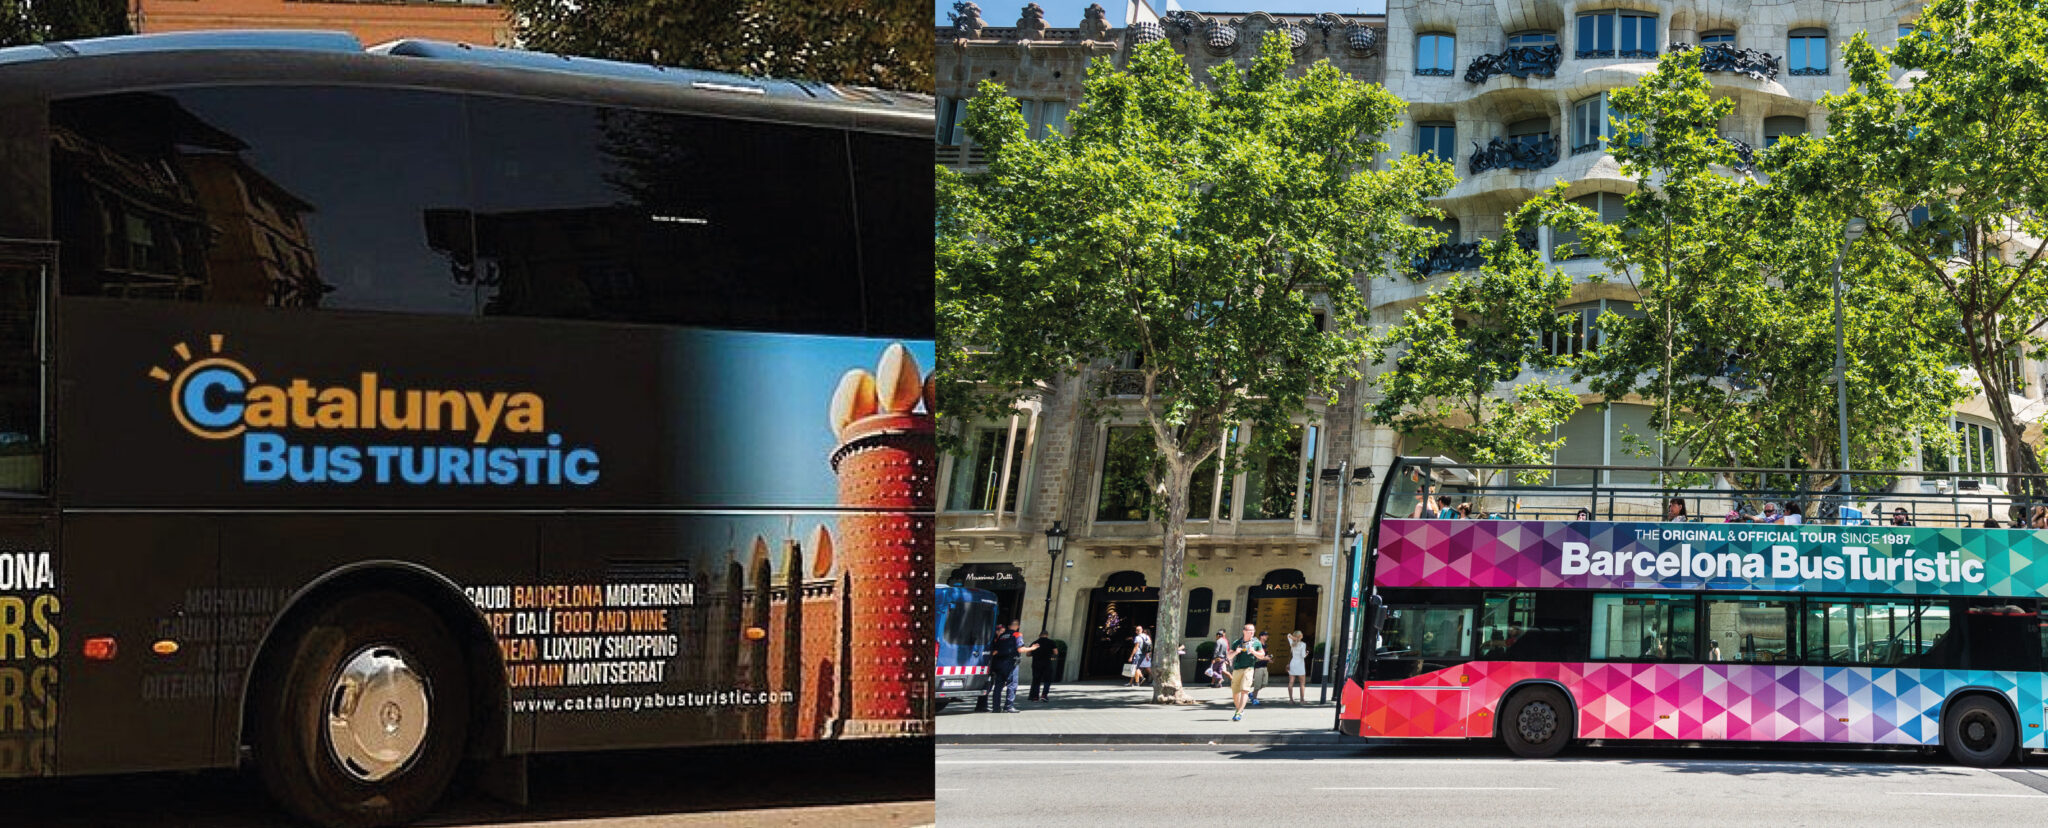 Autobuses turísticos Barcelona descuentos Carné ISIC